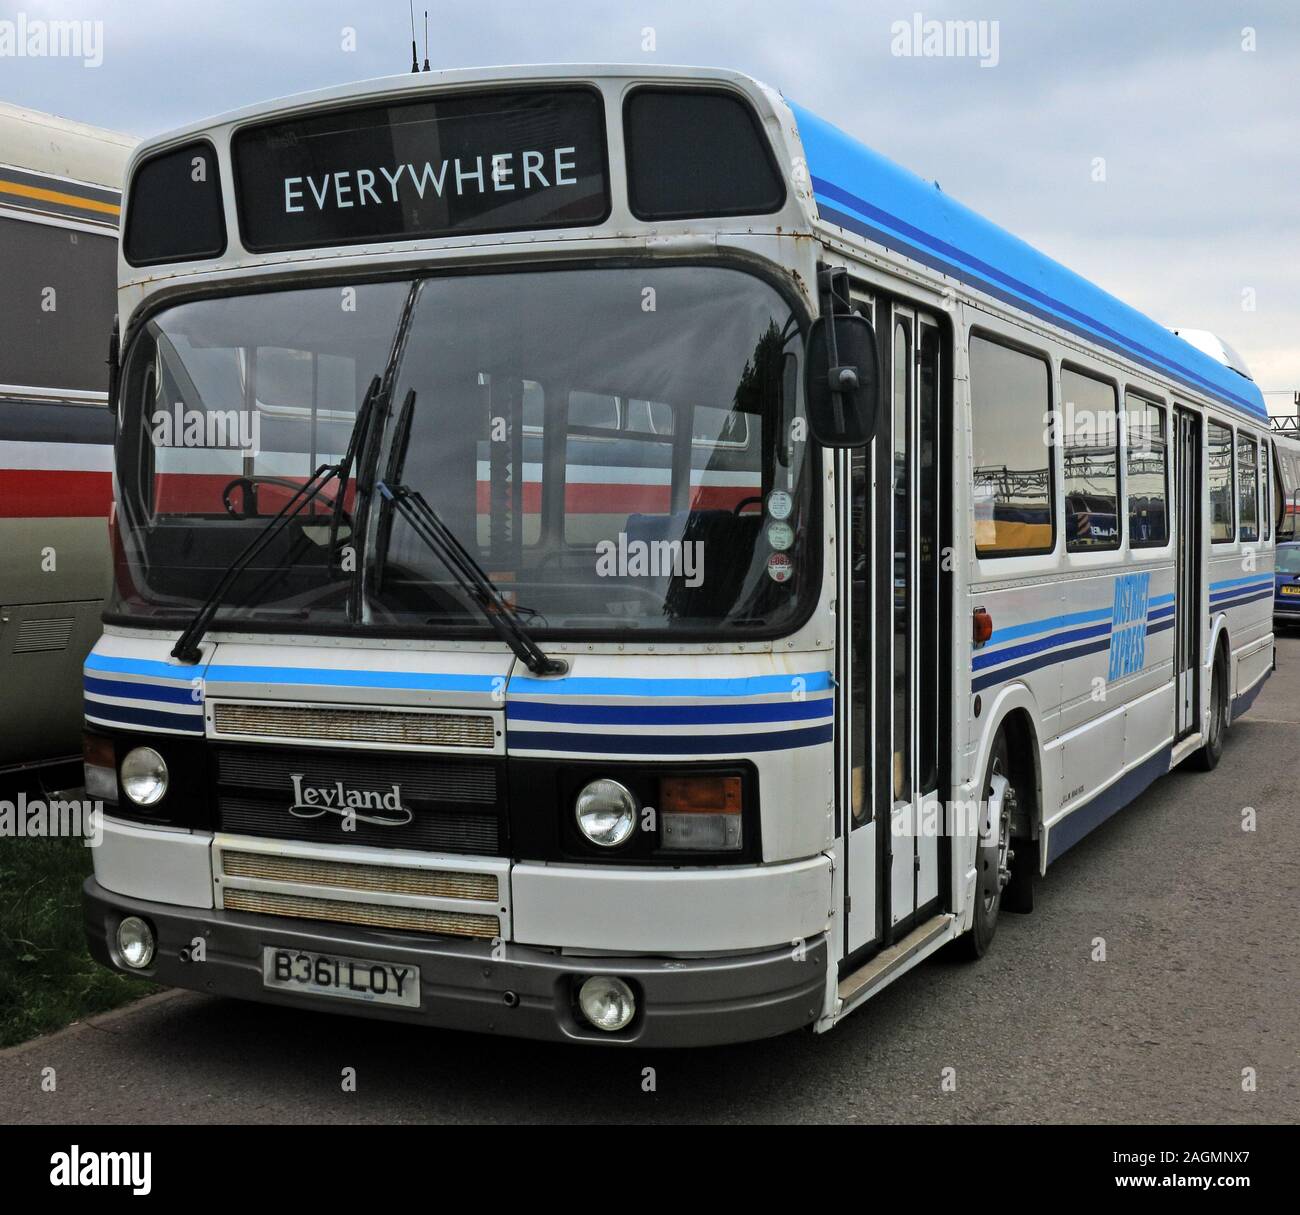 Bus pour partout, Leyland, District express - Leyland B361LOY, Angleterre, Royaume-Uni, CW1 Banque D'Images